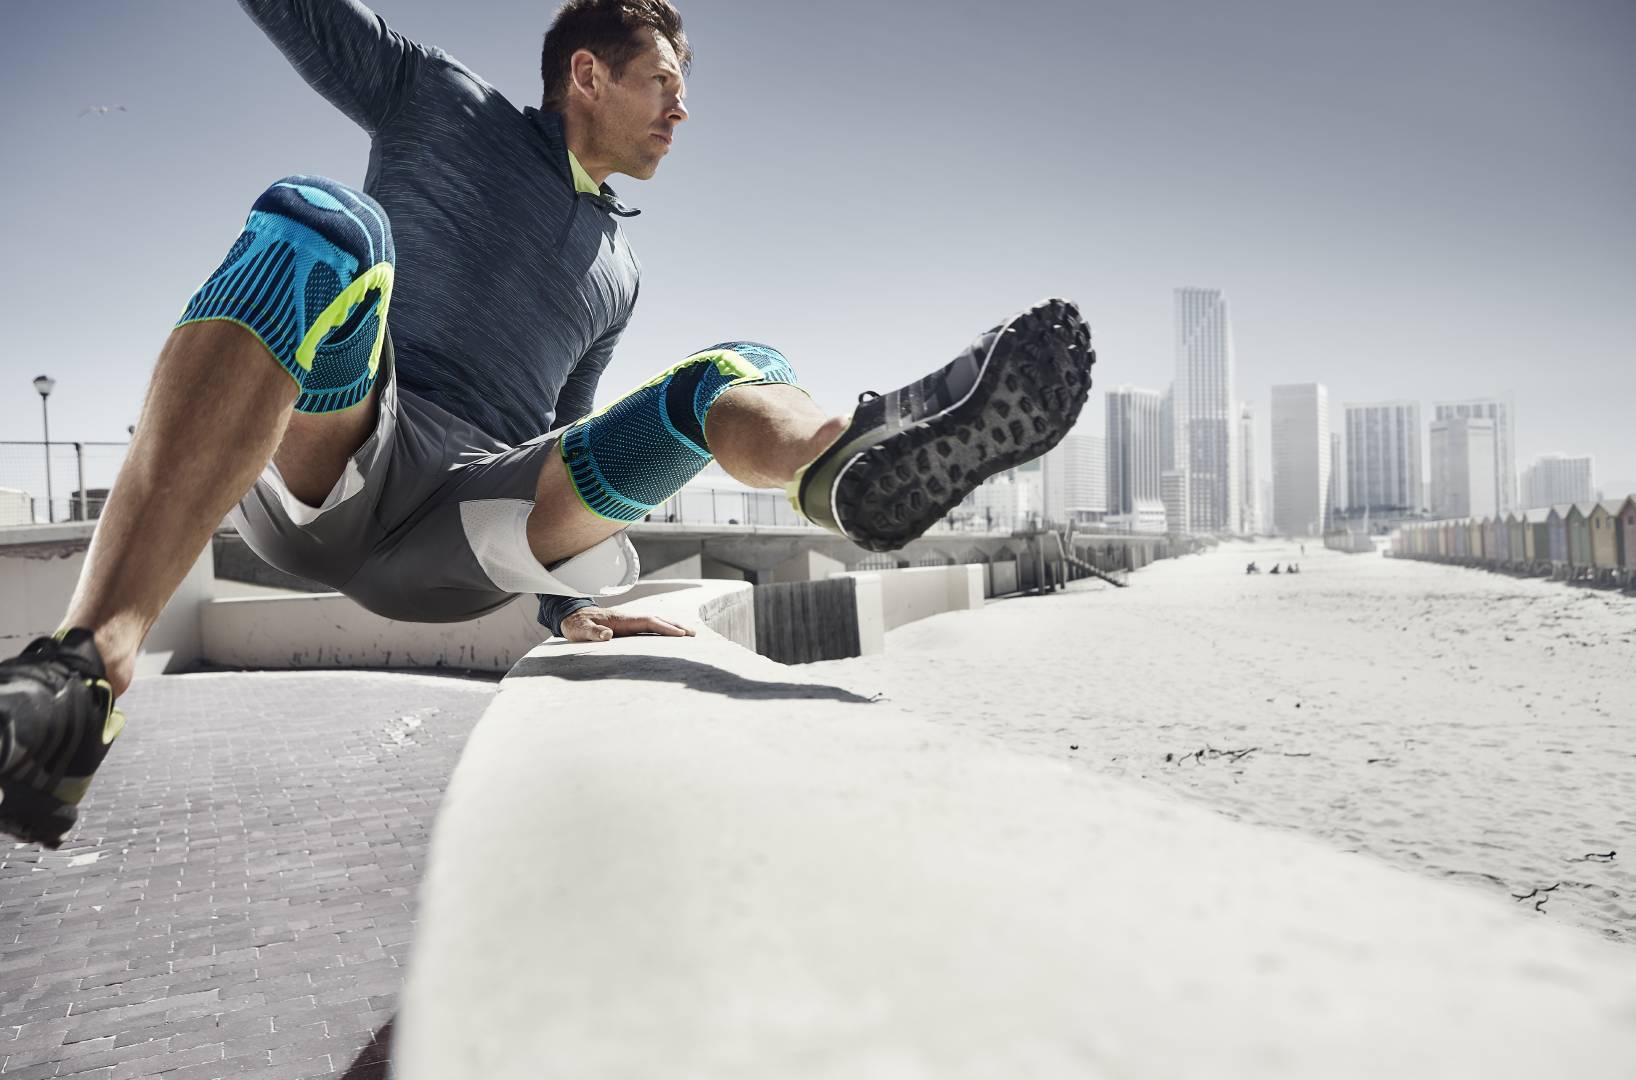 Mann met twee kniebanden springt over een obstakel bij Urban Running	 op de achtergrond van wolkenkrabbers